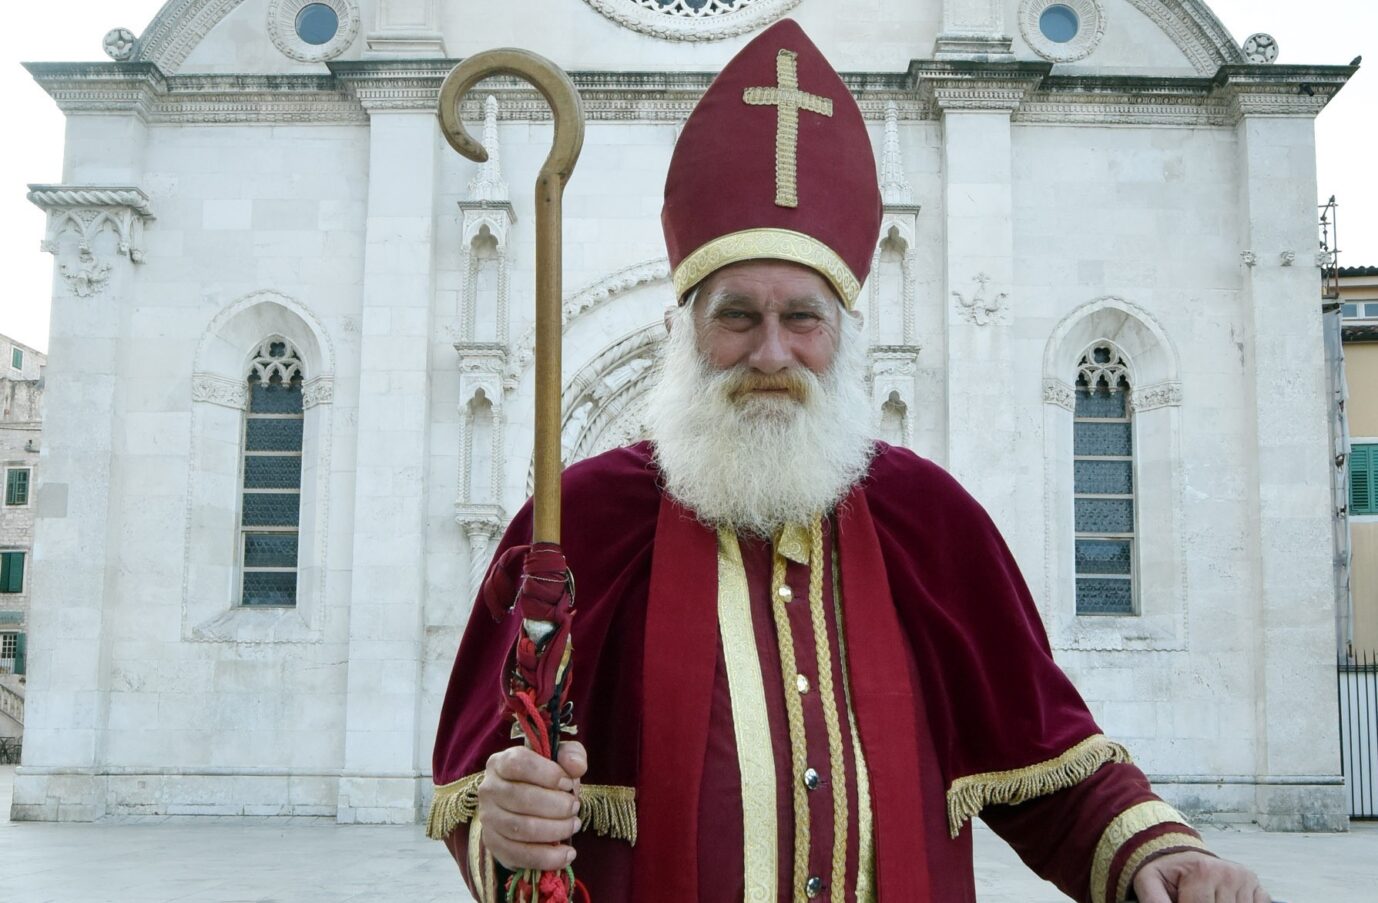 Hausverbot in Salzburg: Der klassische Nikolaus trägt eine Kopfbedeckung mit christlichem Kreuz.